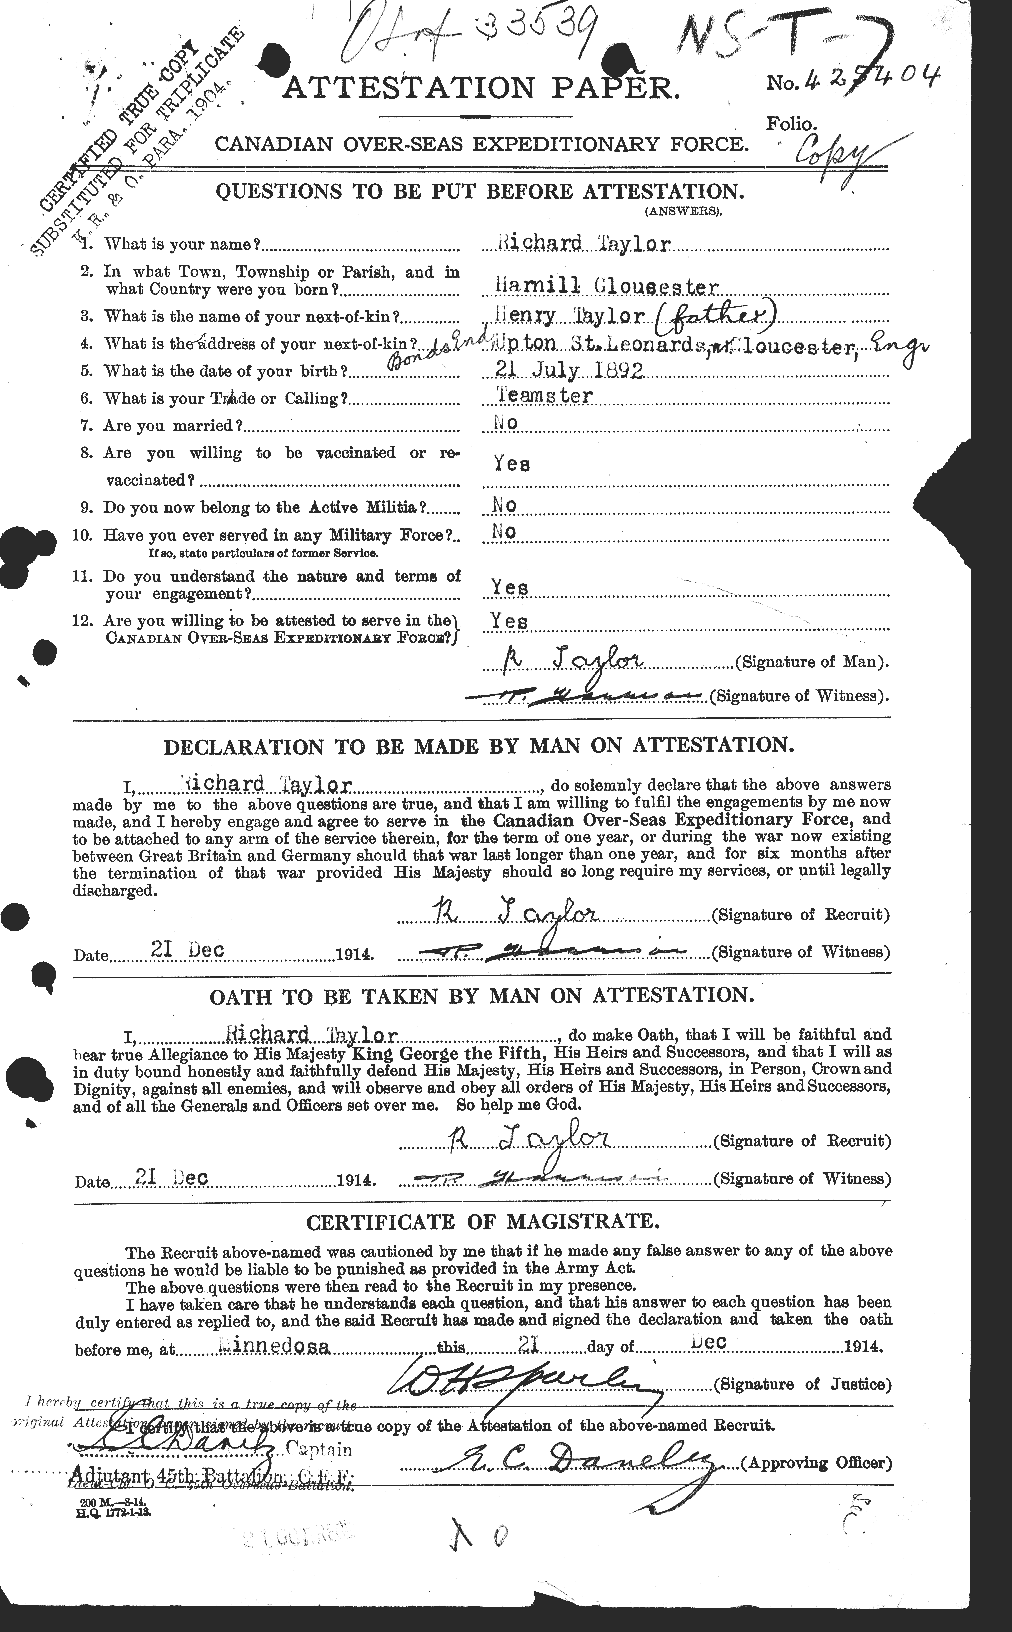 Dossiers du Personnel de la Première Guerre mondiale - CEC 627818a